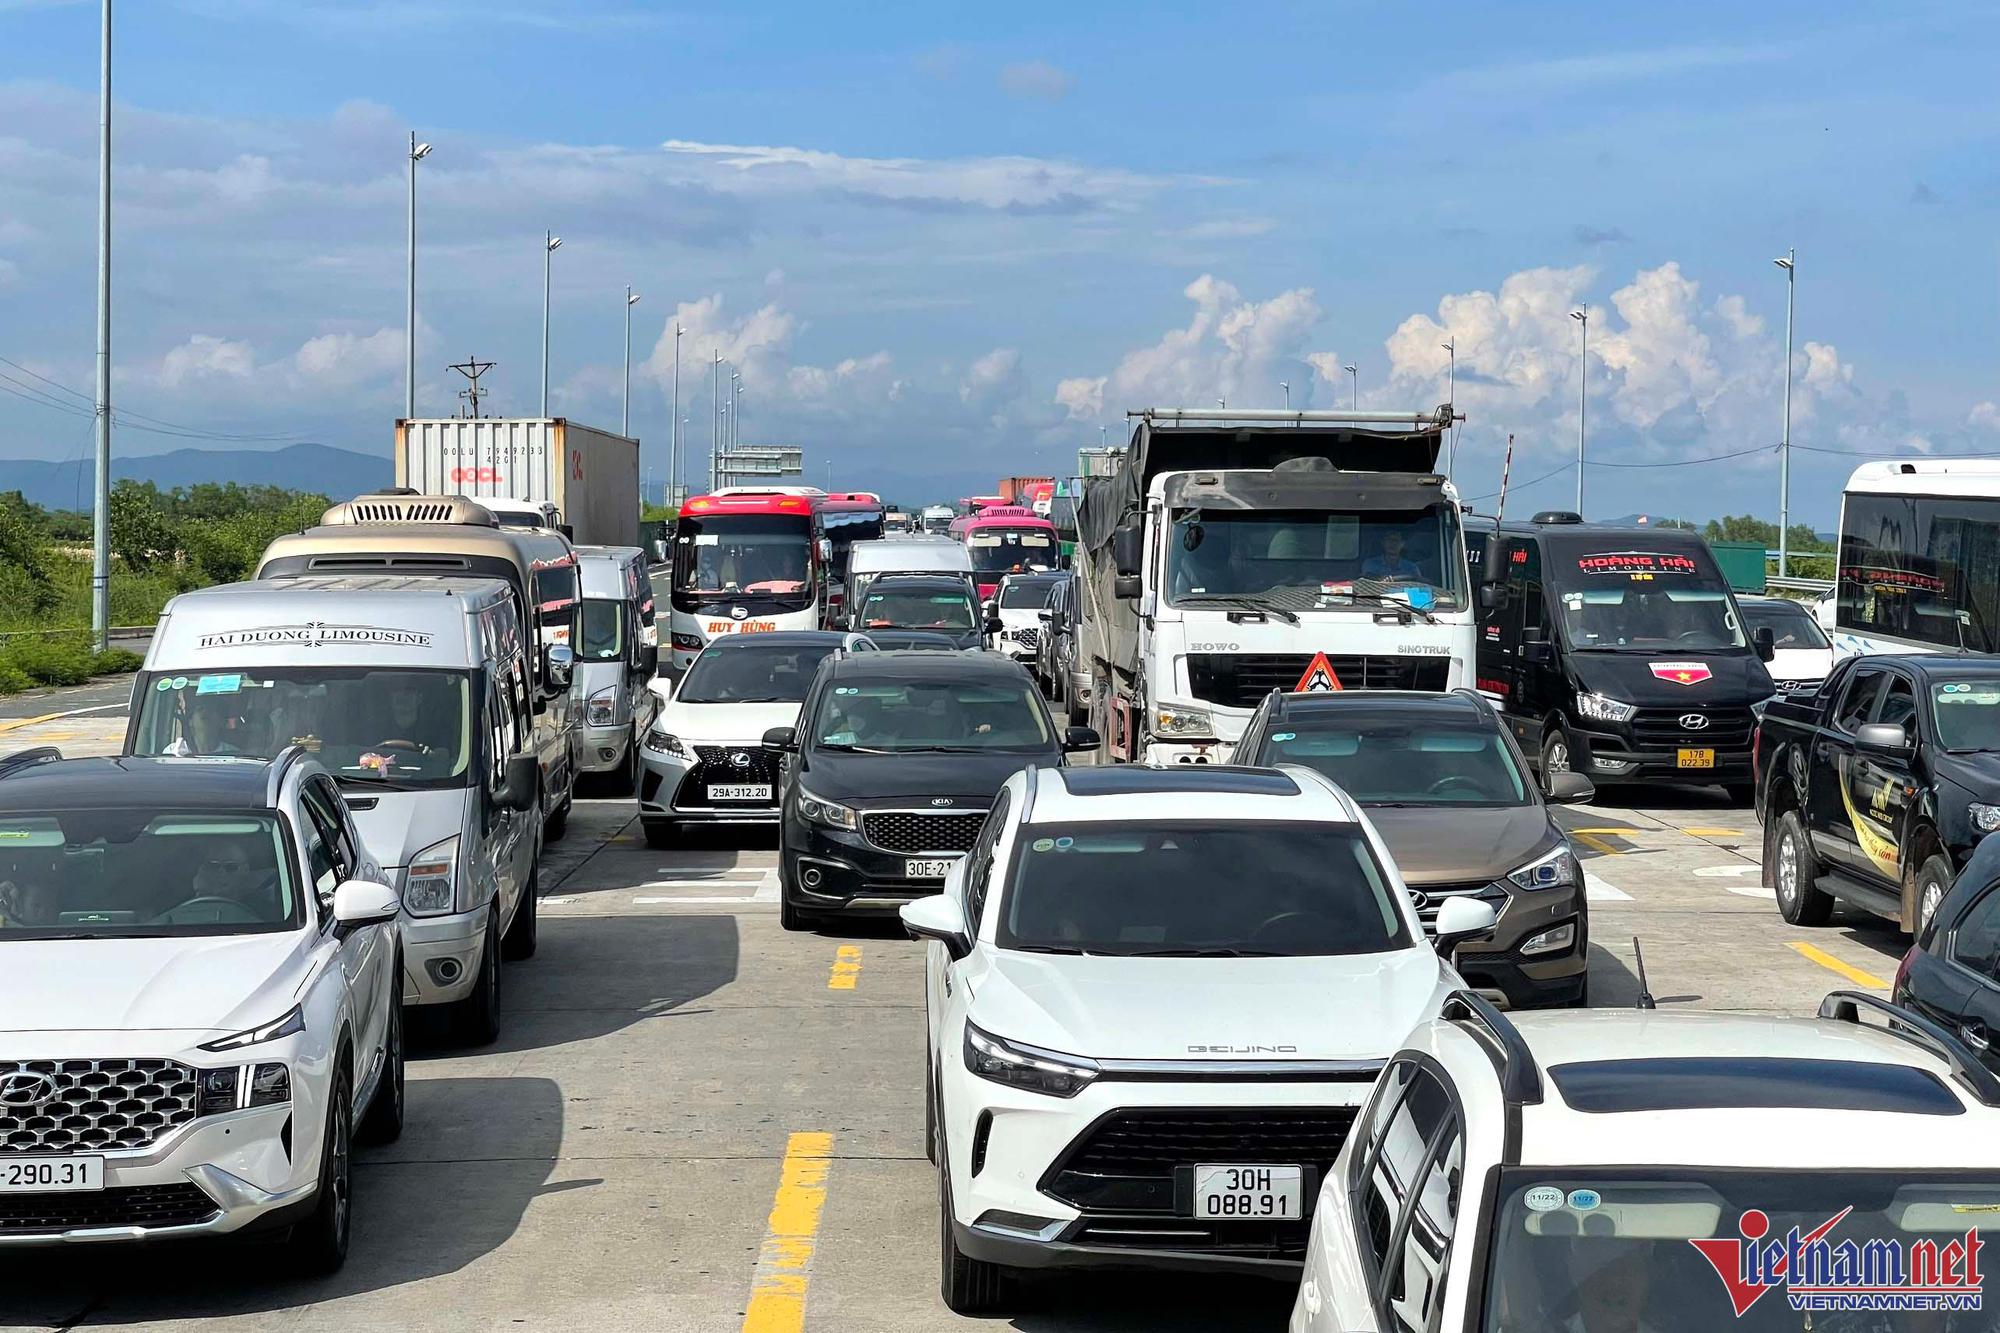 Hàng trăm ô tô xếp hàng chờ dán thẻ ETC trên cao tốc ở Quảng Ninh - Ảnh 10.